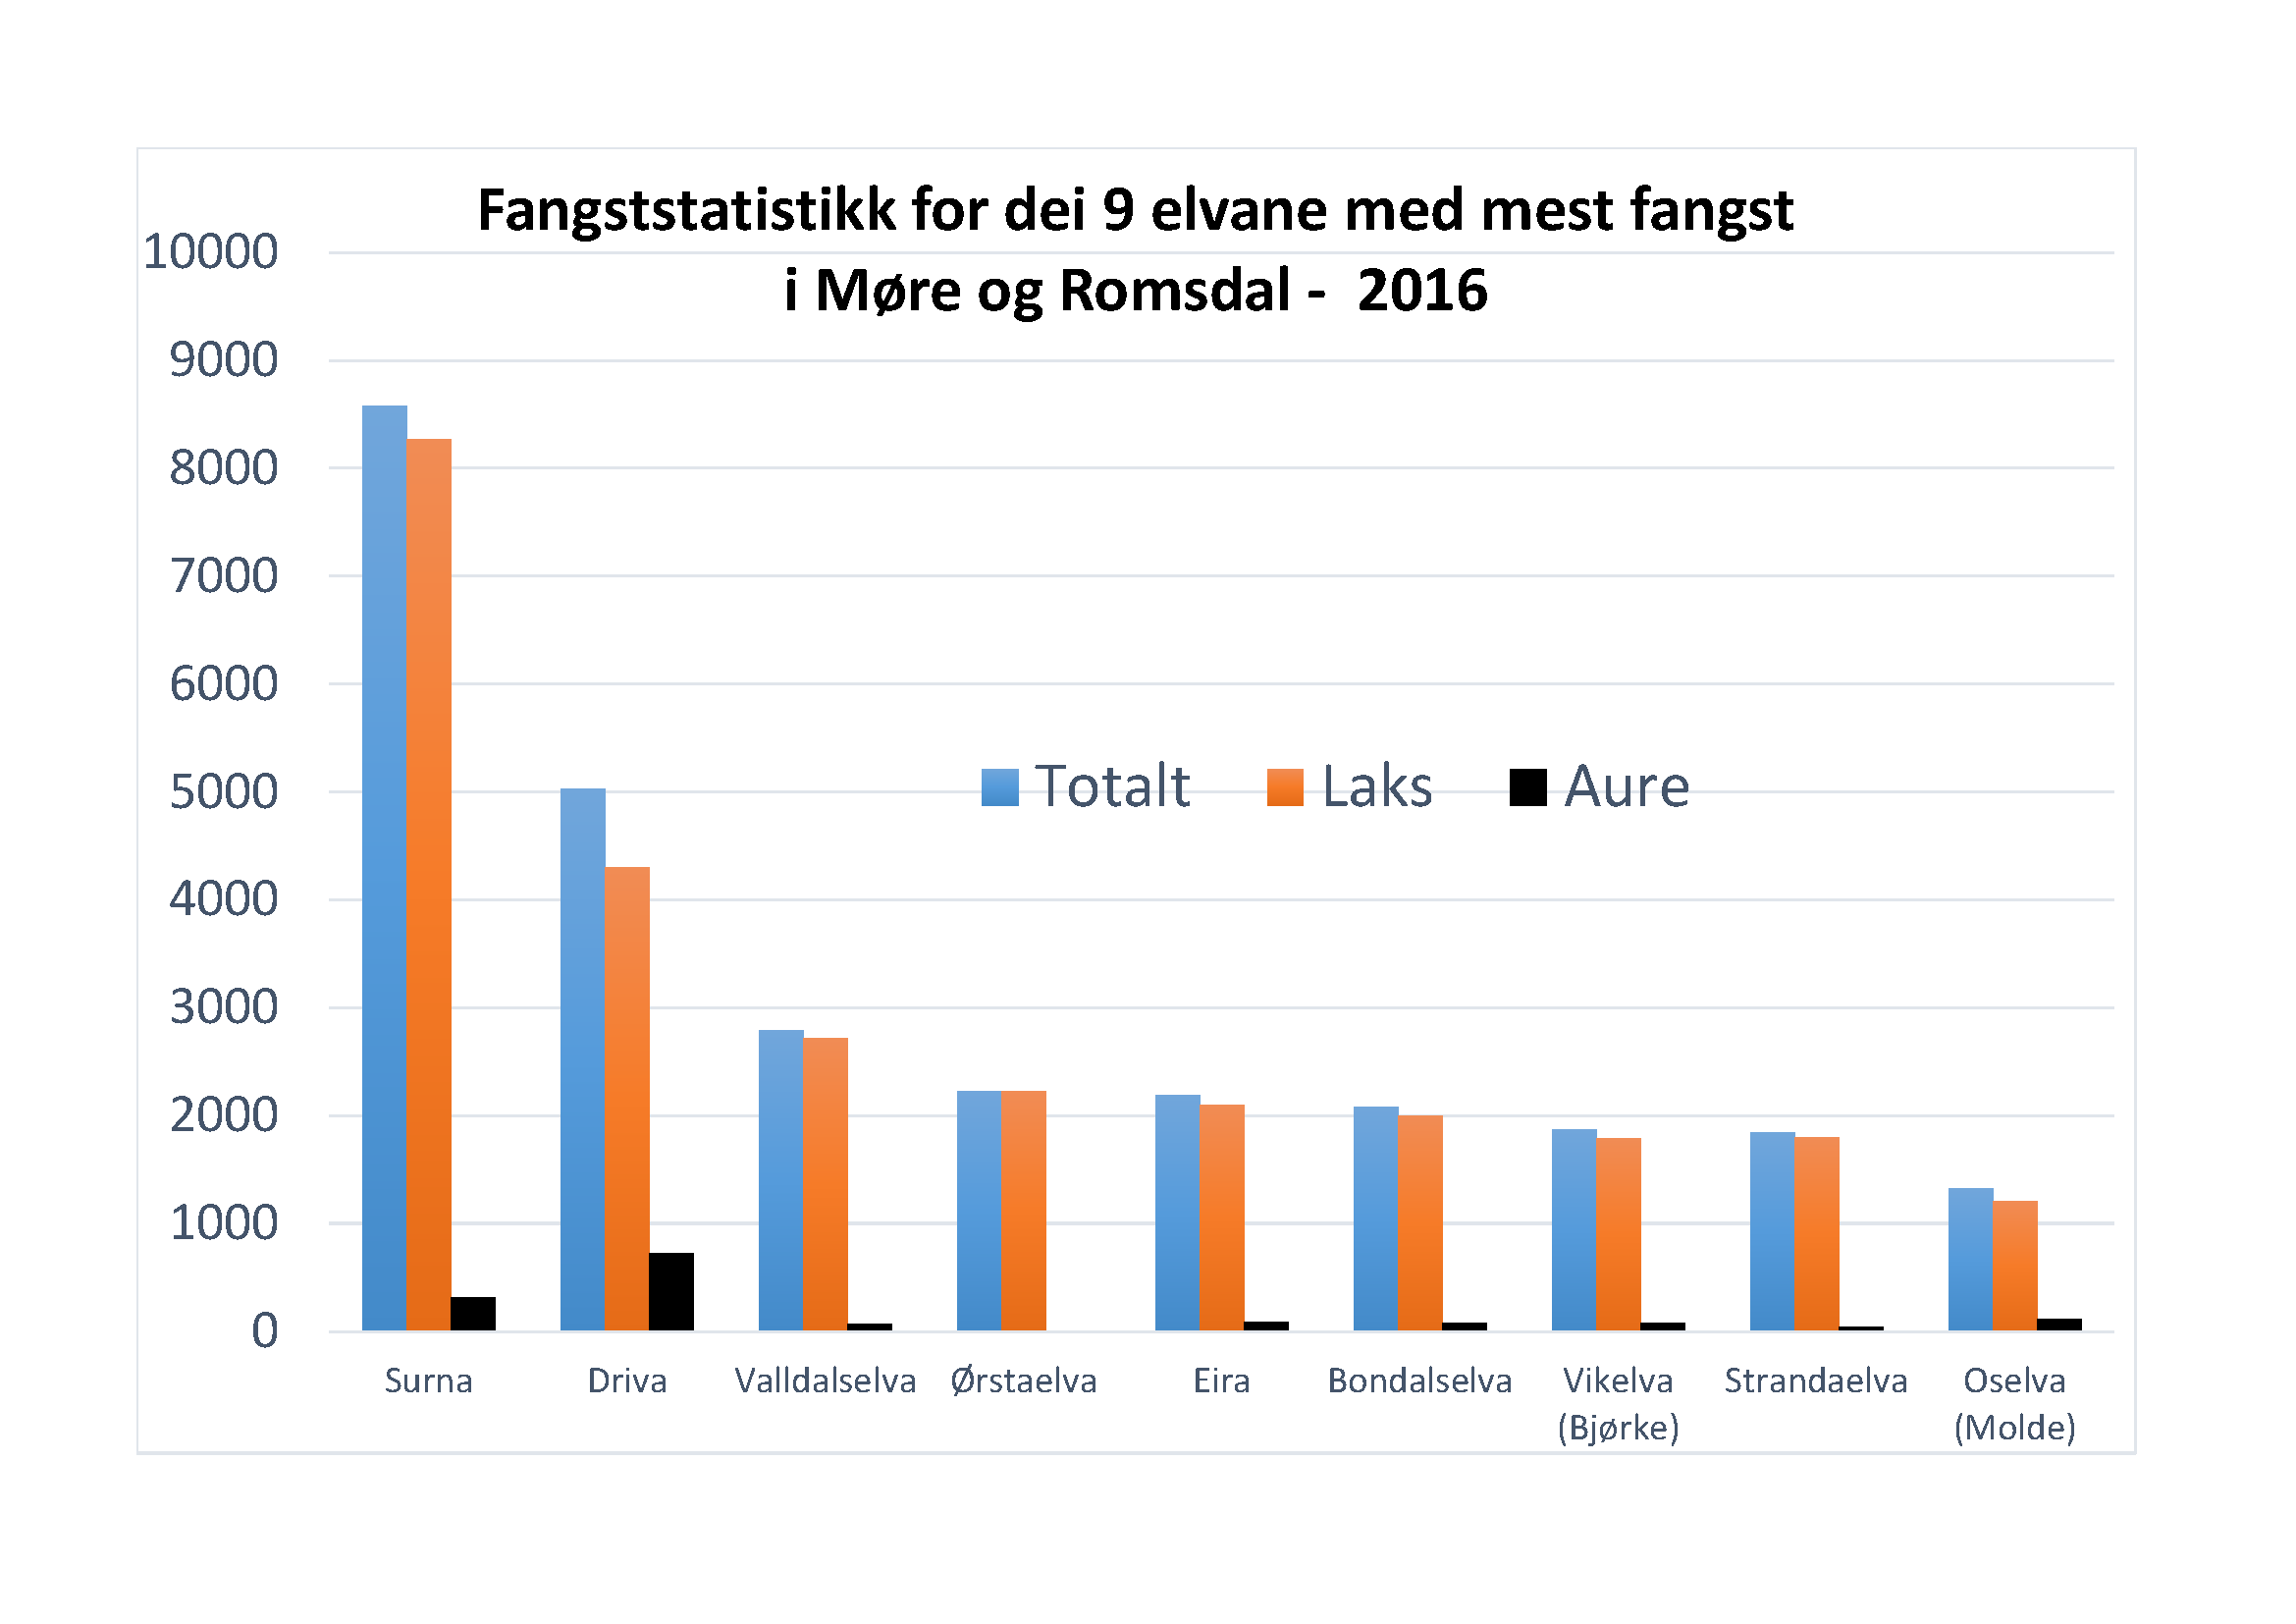 Fangststatistikk for dei 9 elvane med mest fangst i Møre og Romsdal - 2016